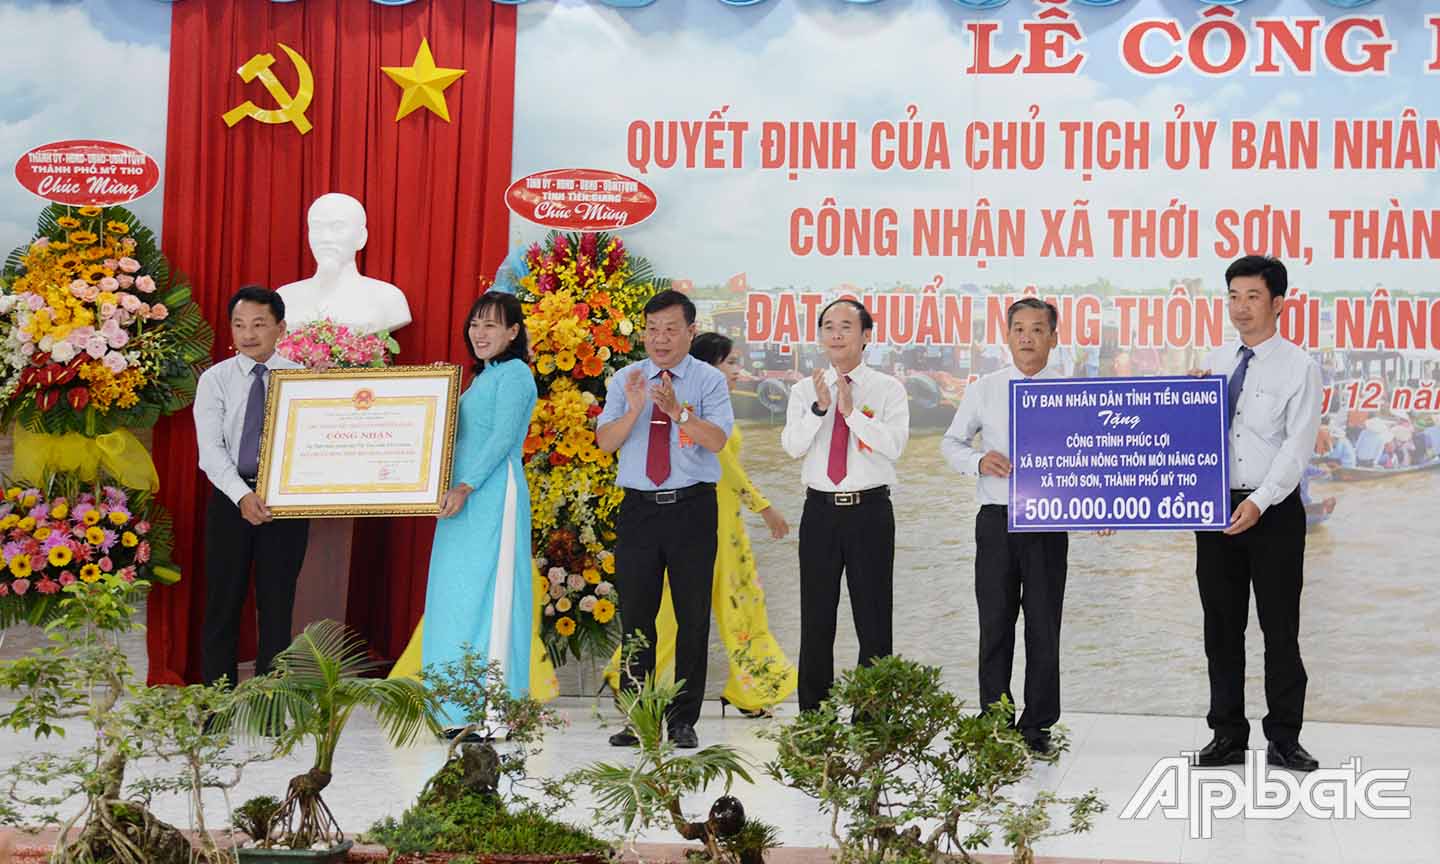 Đồng chí Nguyễn Ngọc Trầm (thứ 3 từ trái sang) và đồng chí Trần Kim Trát (thứ 3 từ phải sang) trao bằng công nhận xã NTM nâng cao và biểu trưng tặng công trình phúc lợi cho xã Thới Sơn.